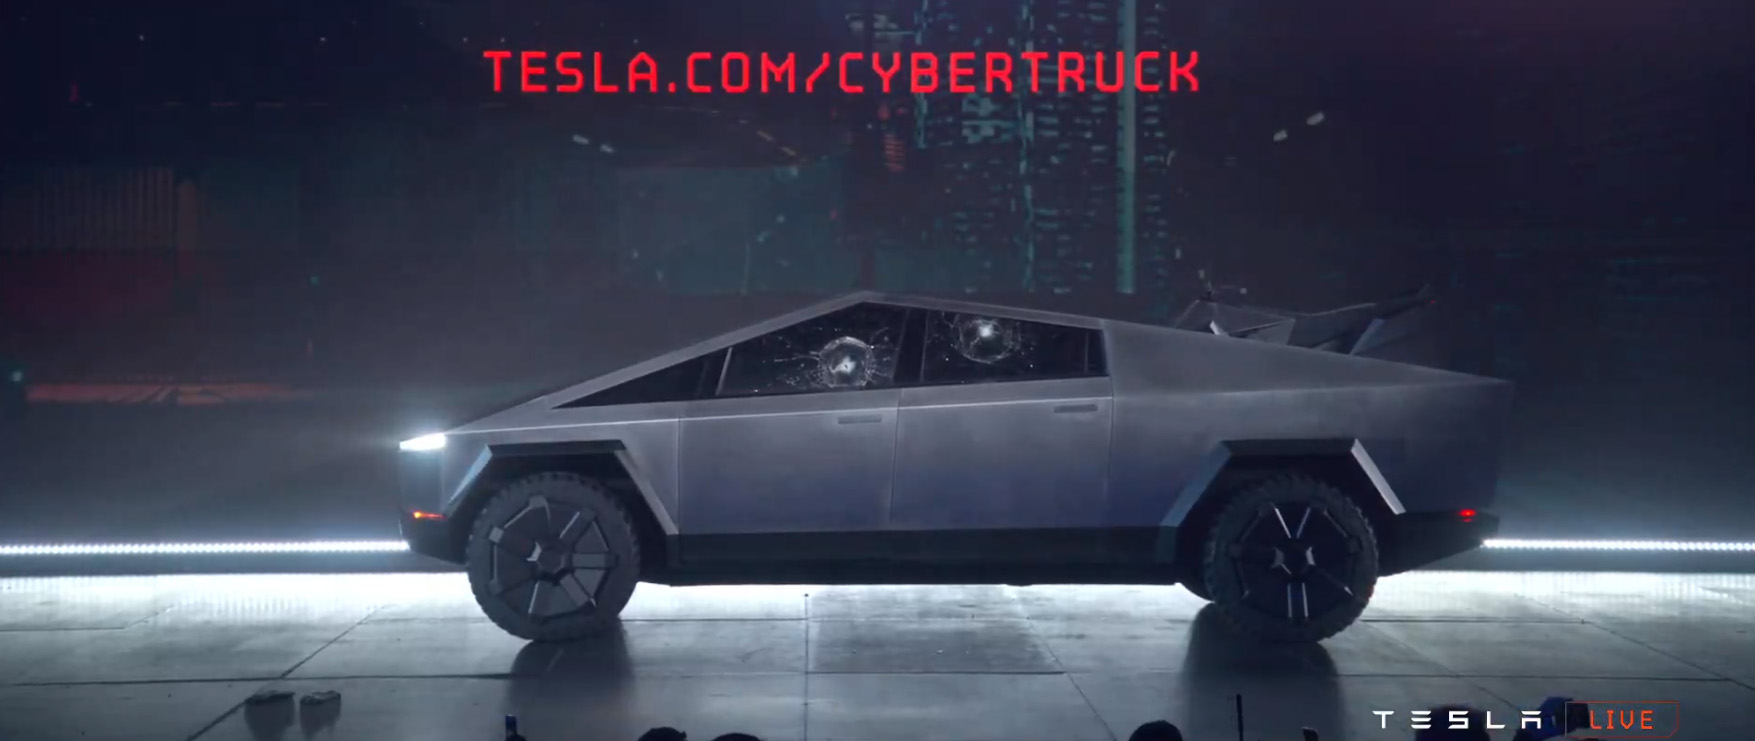 ตกลงยังไง? Elon Musk เผย จะไม่ปรับขนาด Tesla CyberTruck ให้เล็กลงแล้ว